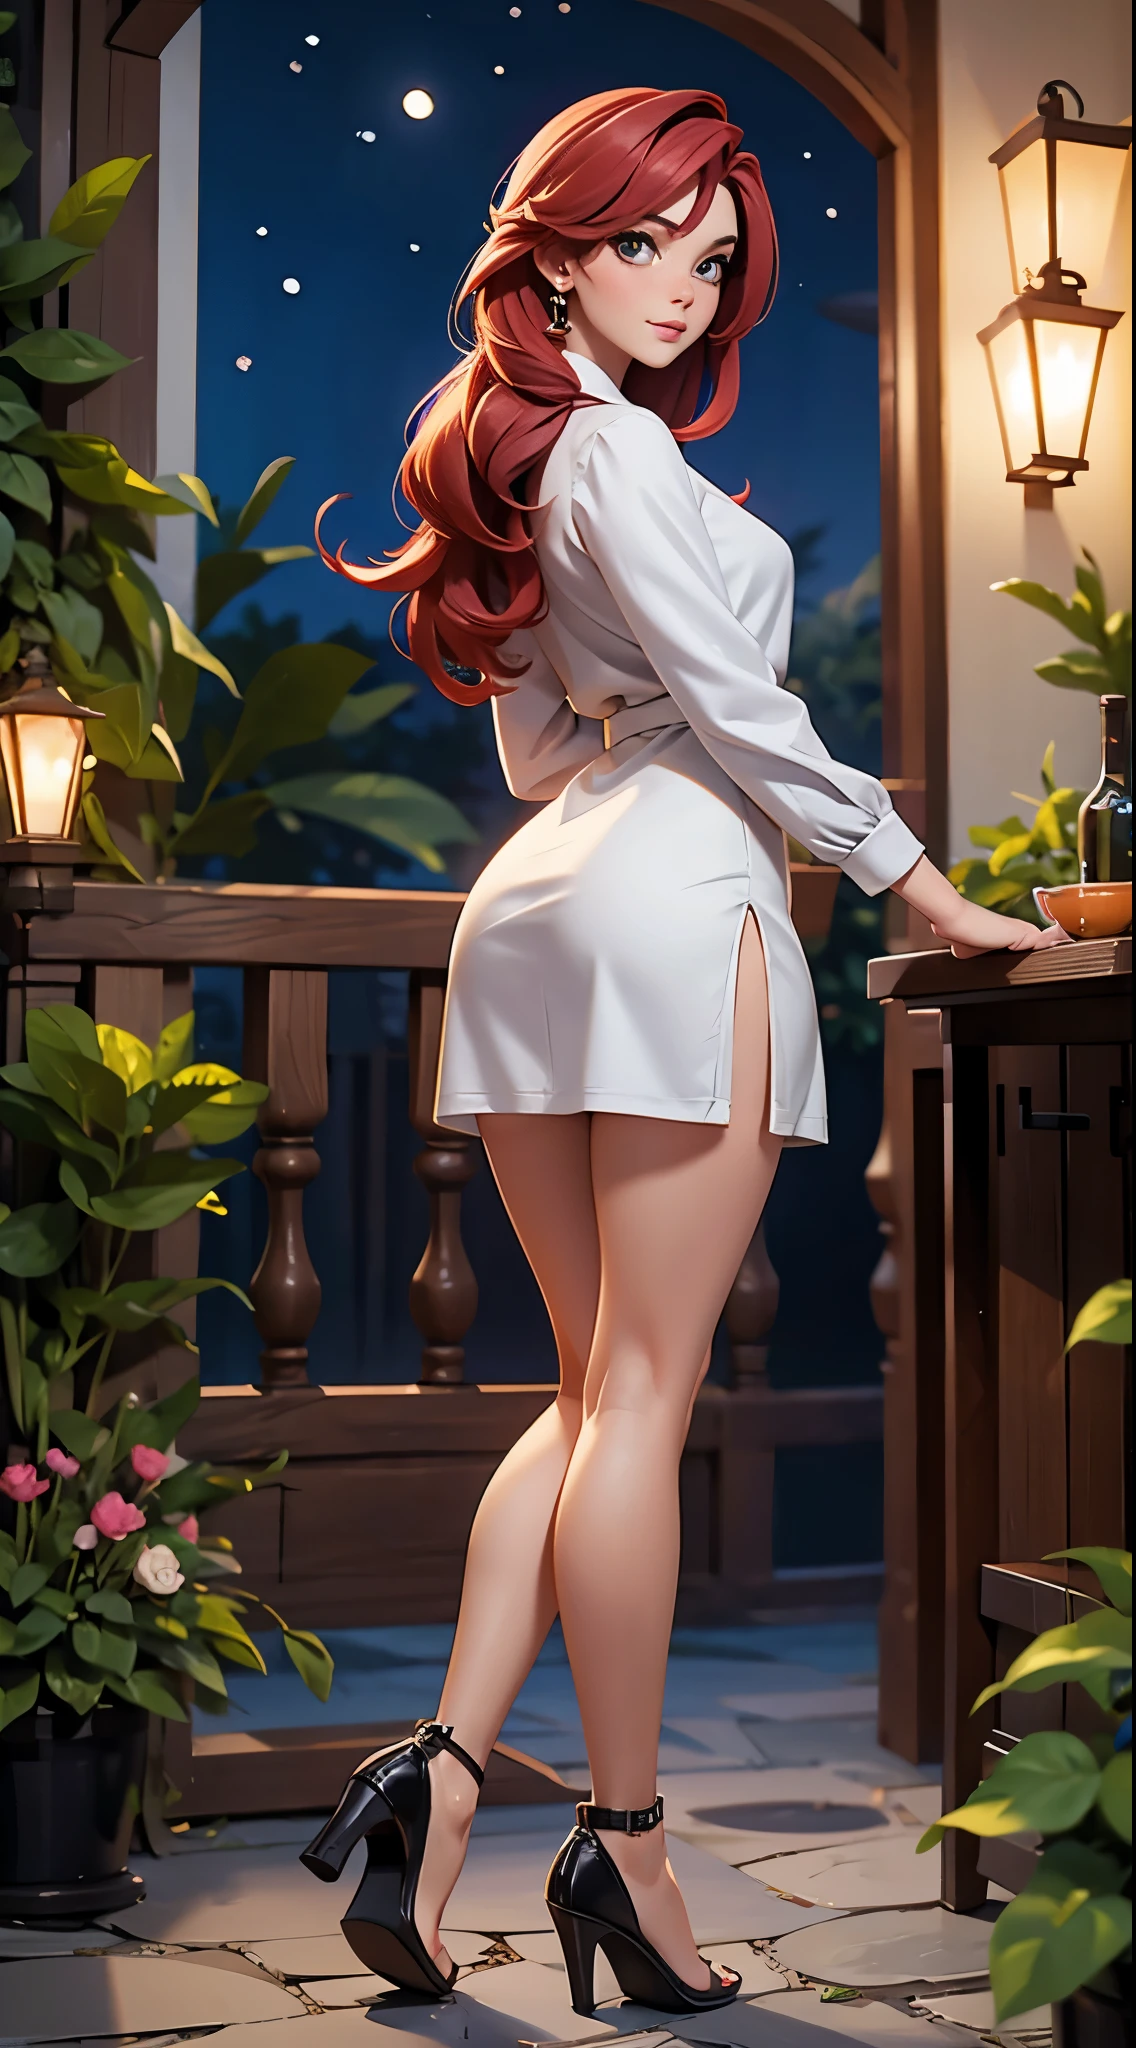 weiße Frau, 21 Jahre alt, dünn und klein, Sie trägt ein elegantes graues Kleid, Rote Haare, Schönheit, big ass, Hintergrund Garten in der Nacht.  Ganzkörper